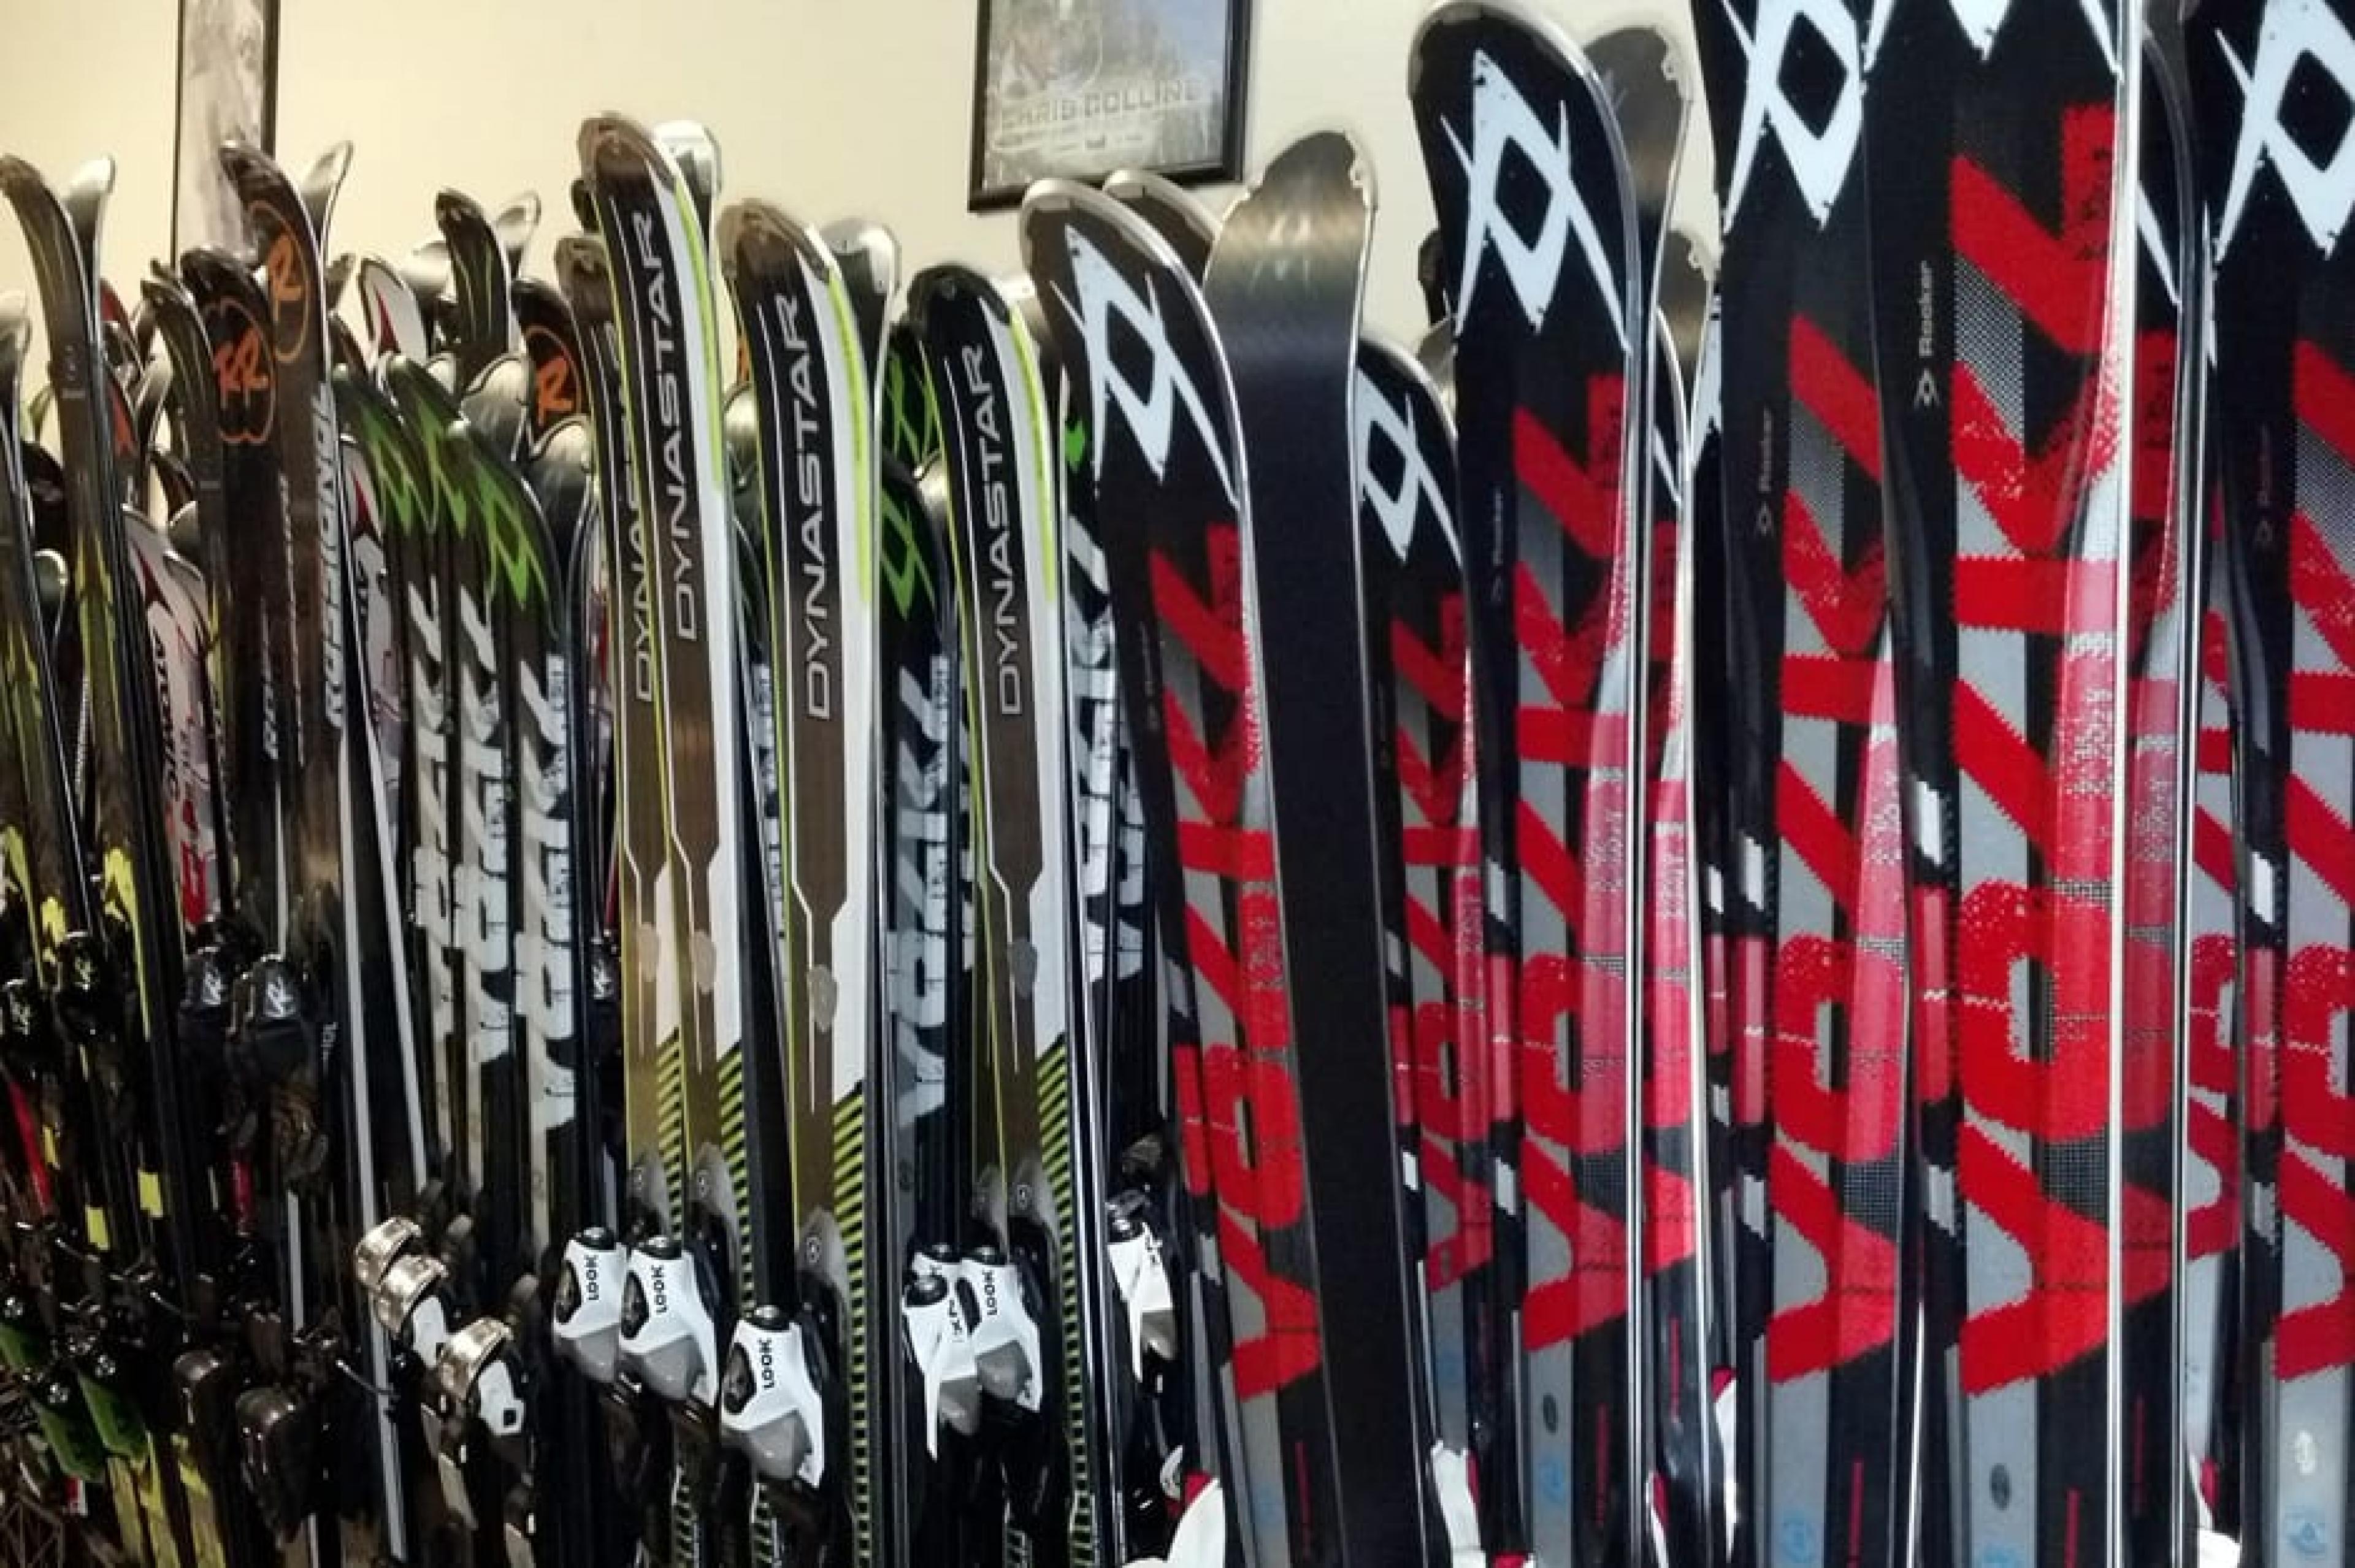  Skiing gear at ,Ski Rentals , Deer Valley, American West